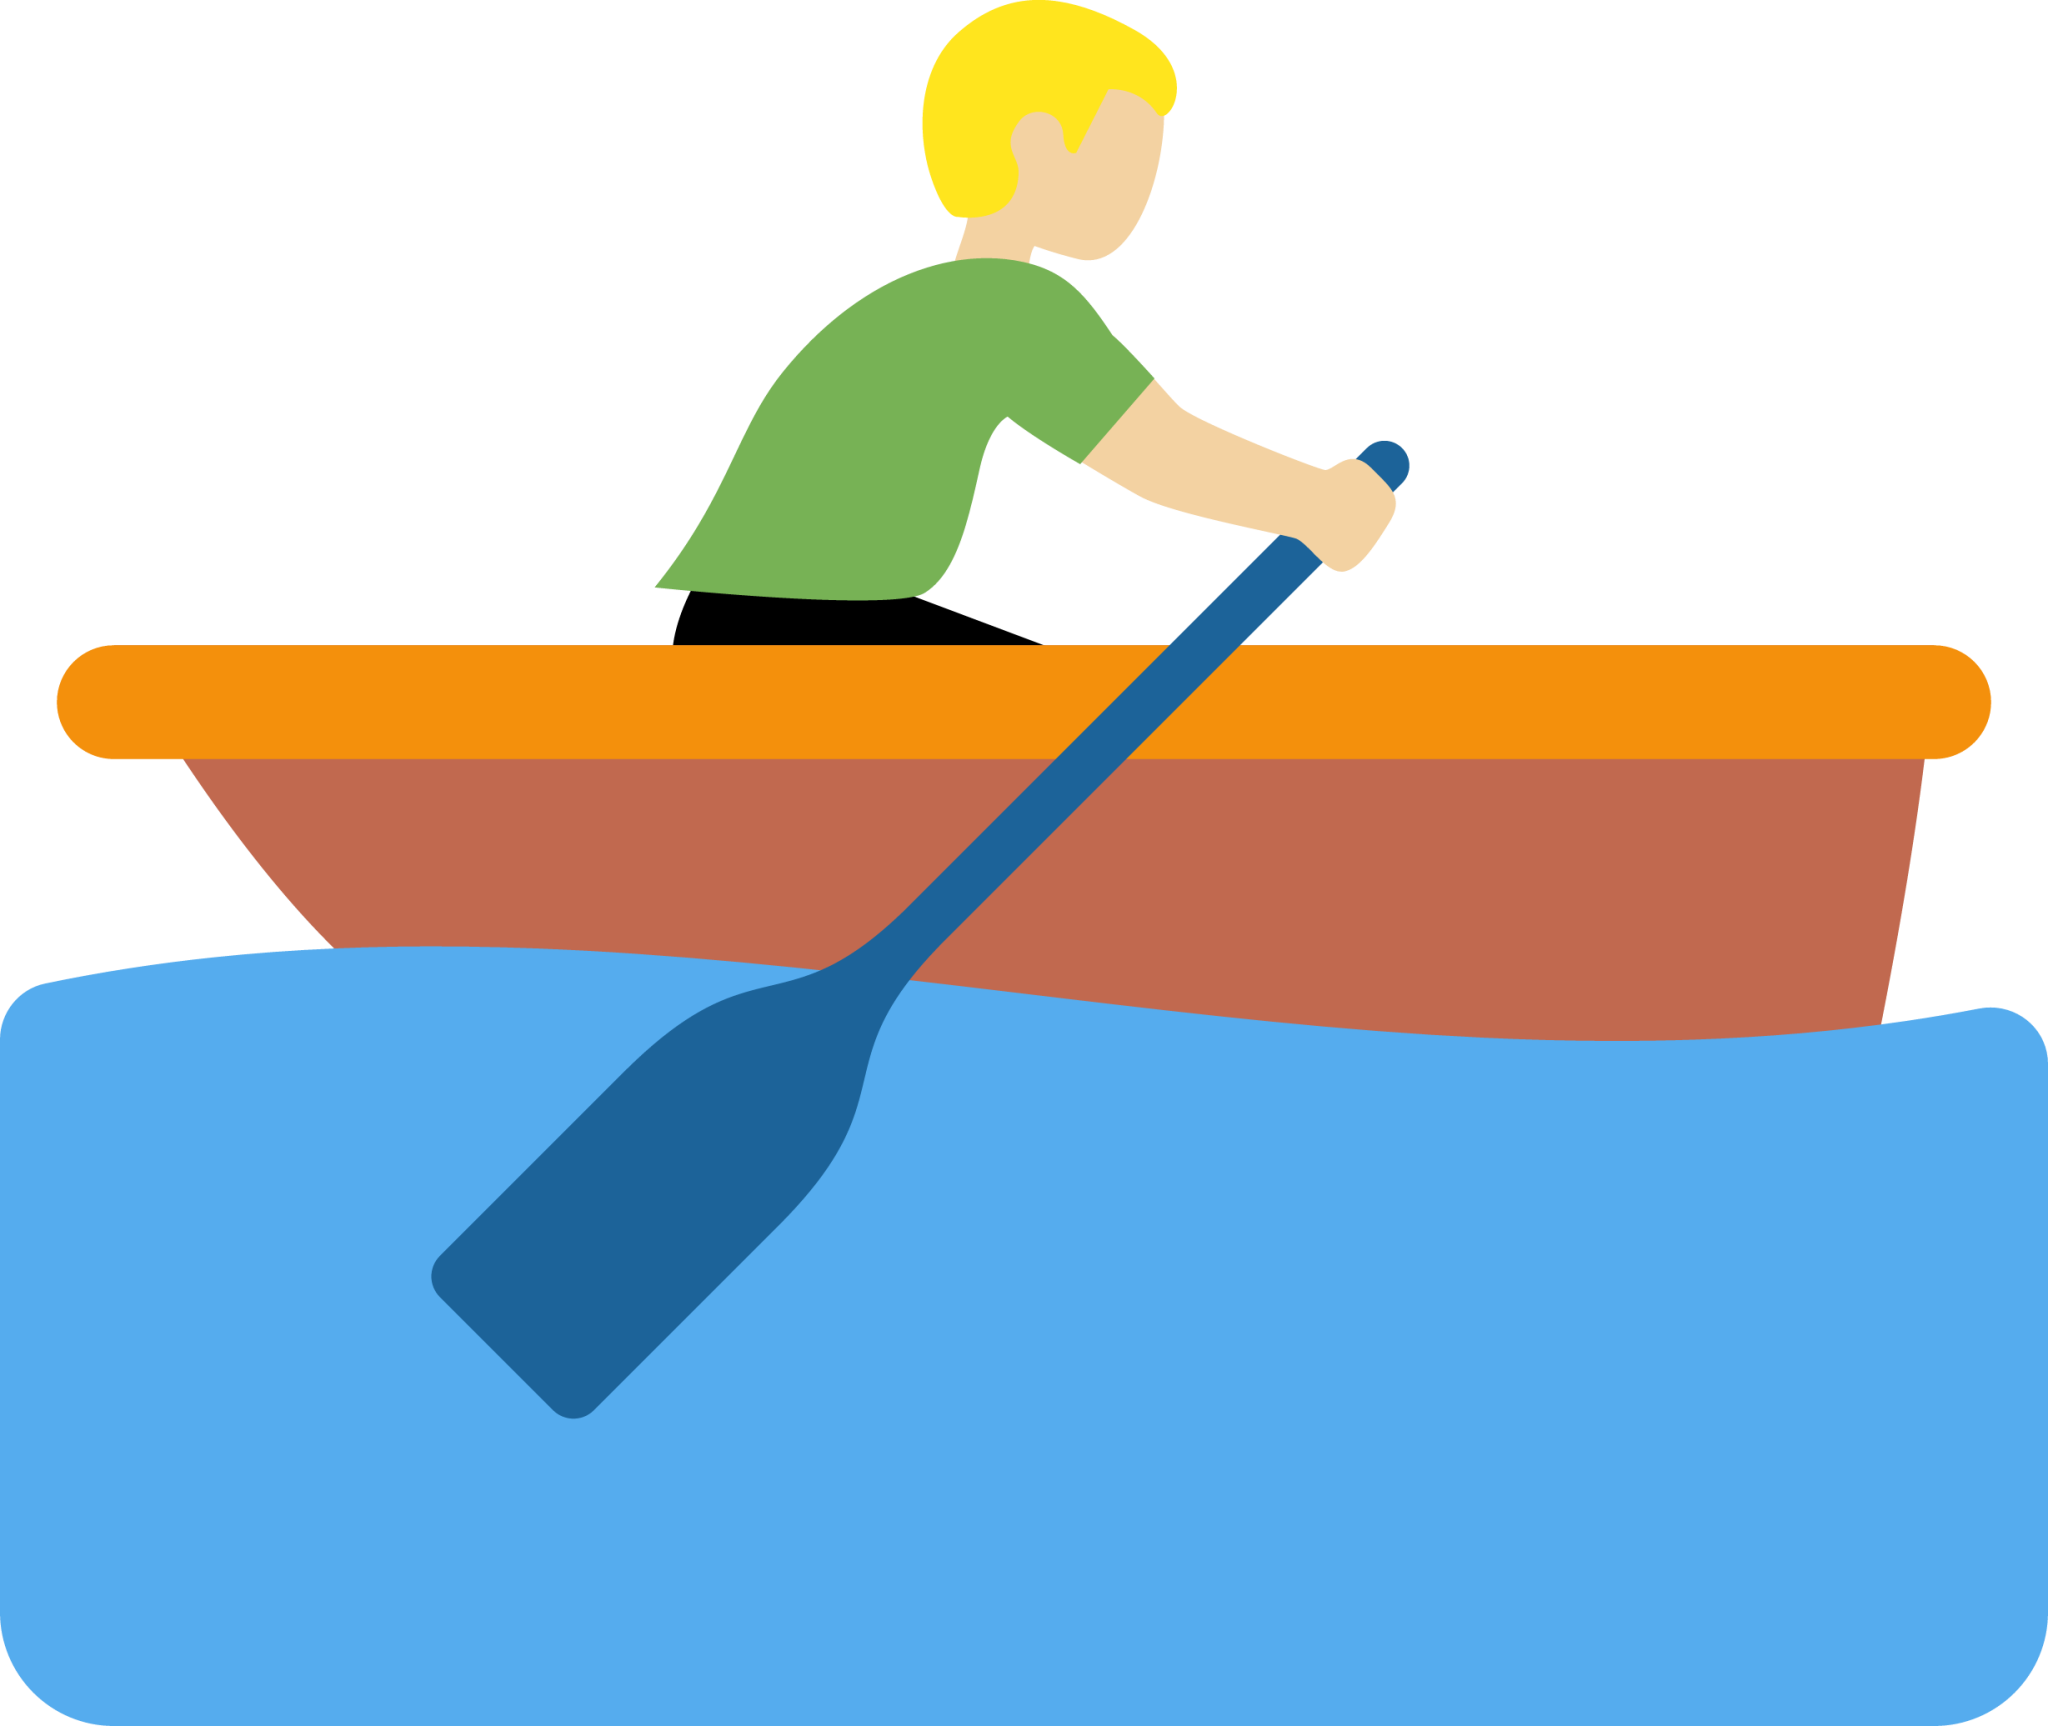 man rowing boat: medium-light skin tone emoji